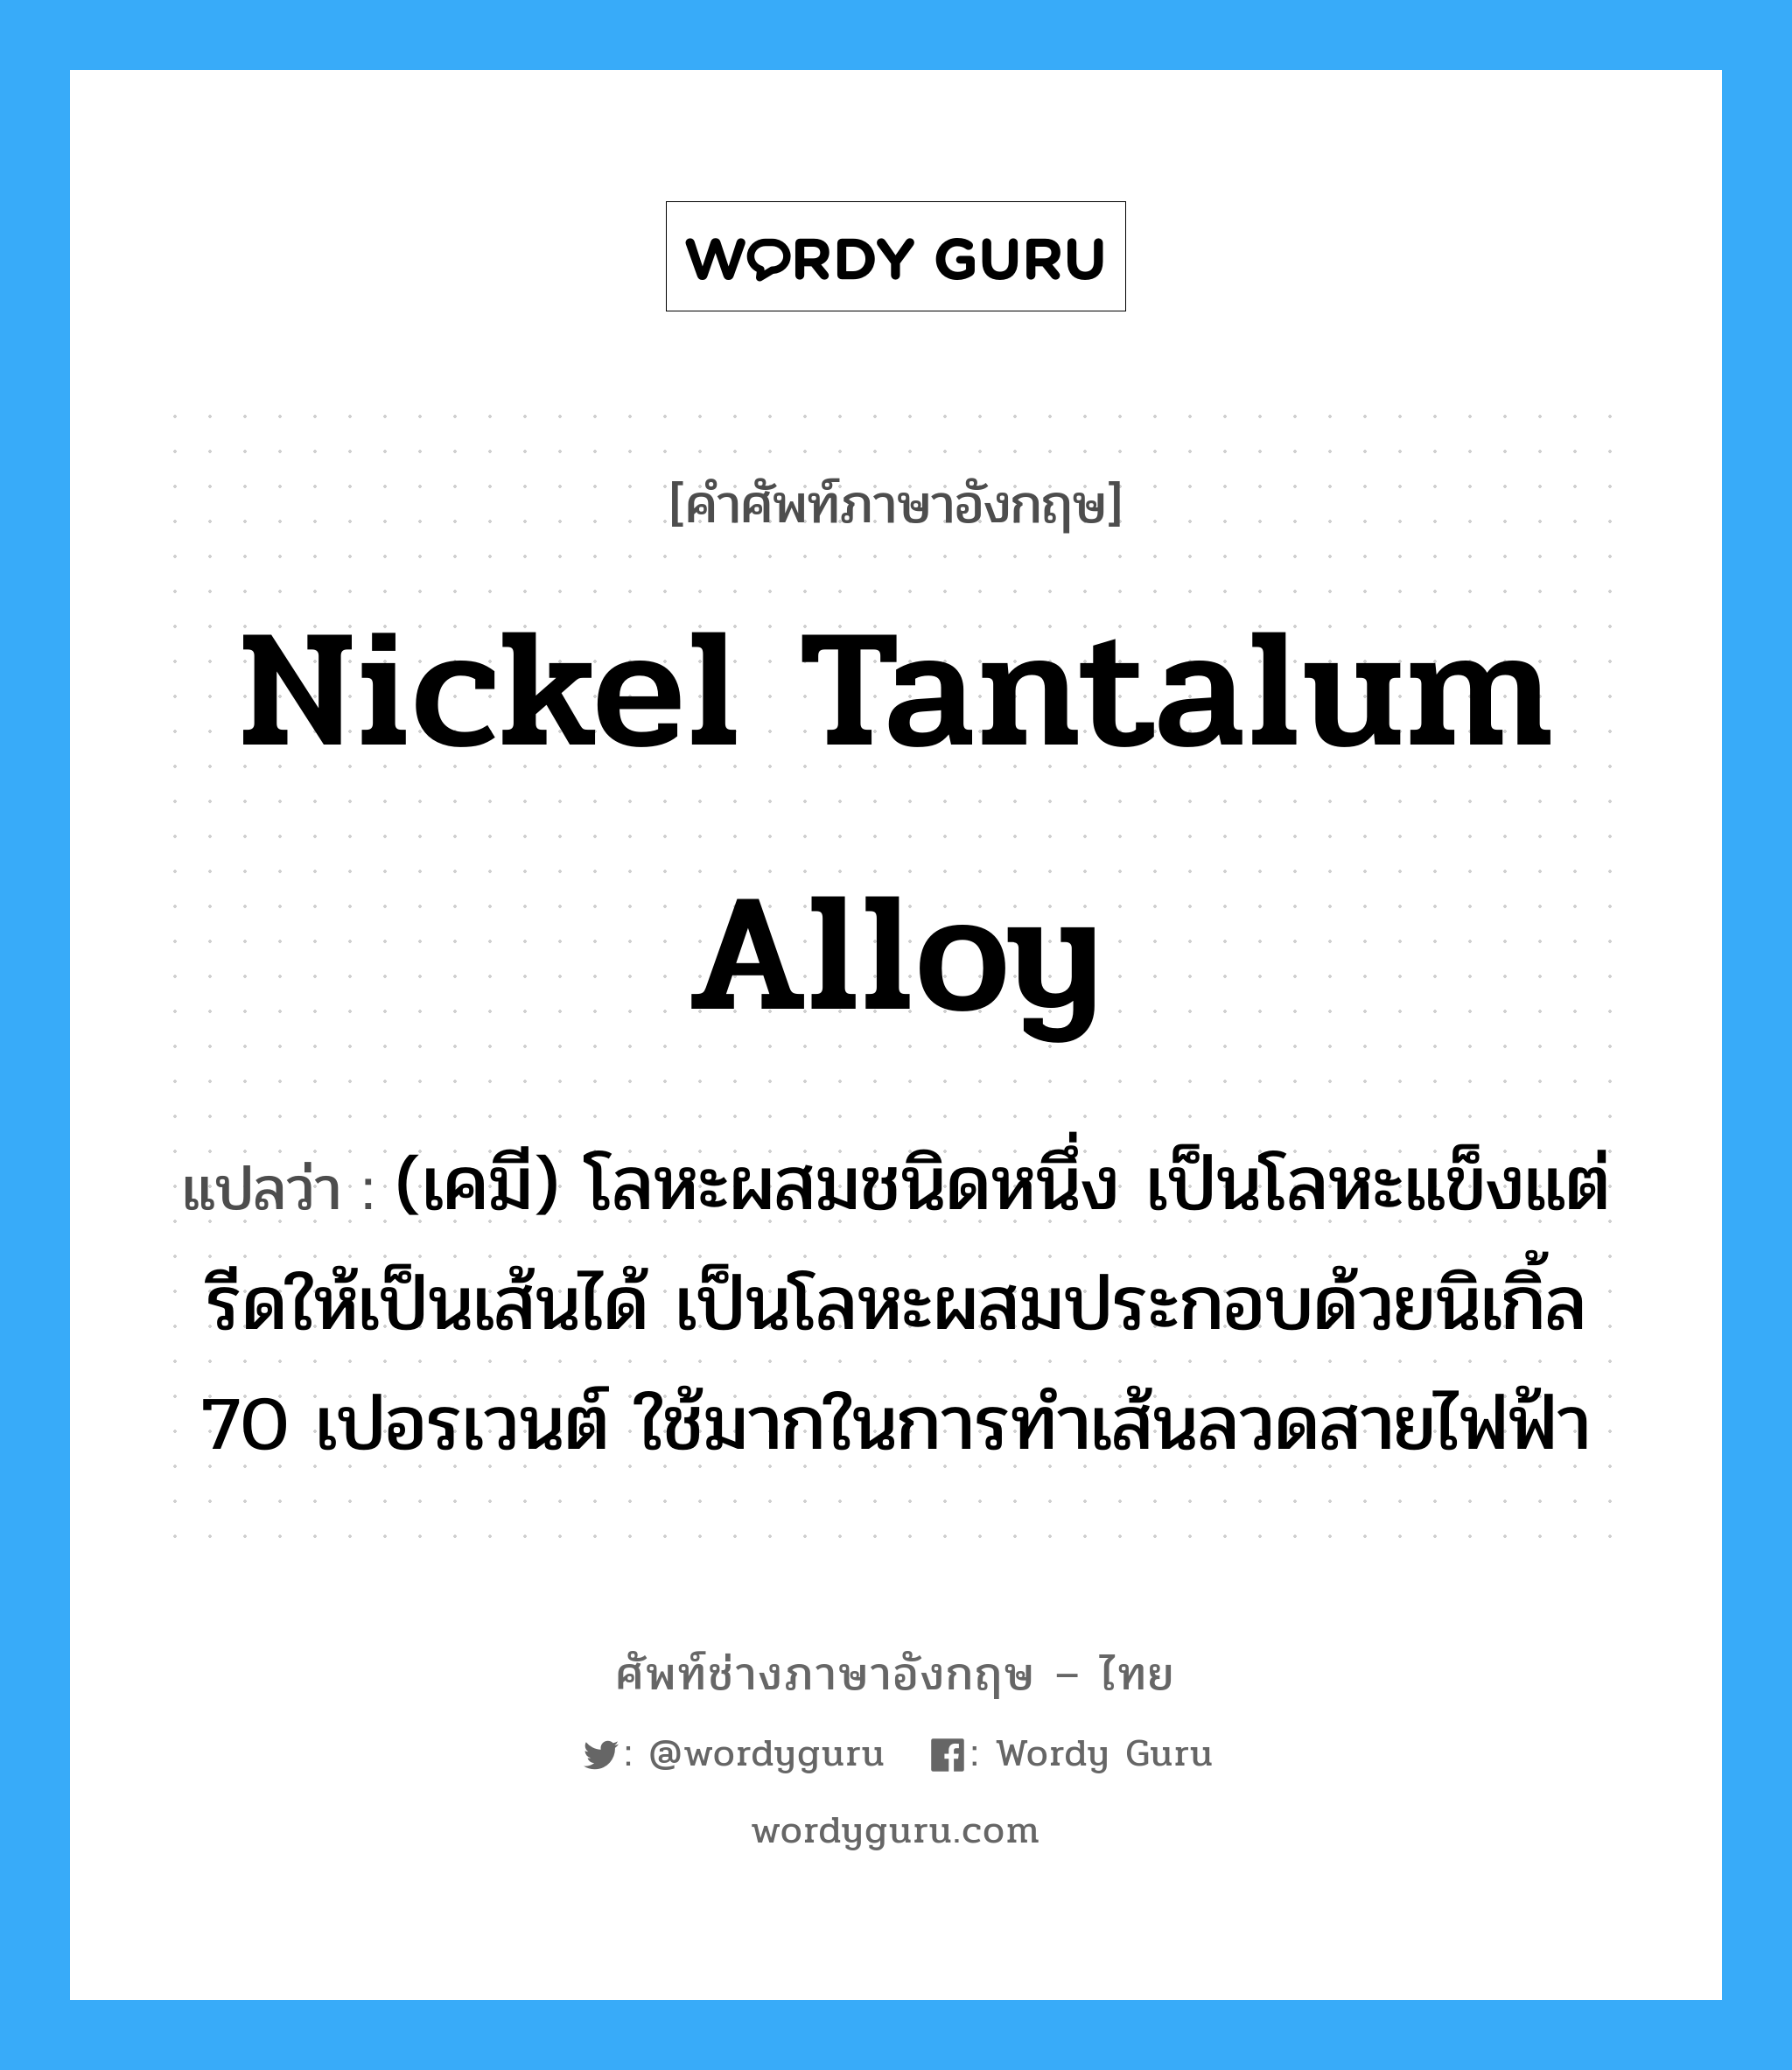 nickel tantalum alloy แปลว่า?, คำศัพท์ช่างภาษาอังกฤษ - ไทย nickel tantalum alloy คำศัพท์ภาษาอังกฤษ nickel tantalum alloy แปลว่า (เคมี) โลหะผสมชนิดหนึ่ง เป็นโลหะแข็งแต่รีดให้เป็นเส้นได้ เป็นโลหะผสมประกอบด้วยนิเกิ้ล 70 เปอรเวนต์ ใช้มากในการทำเส้นลวดสายไฟฟ้า